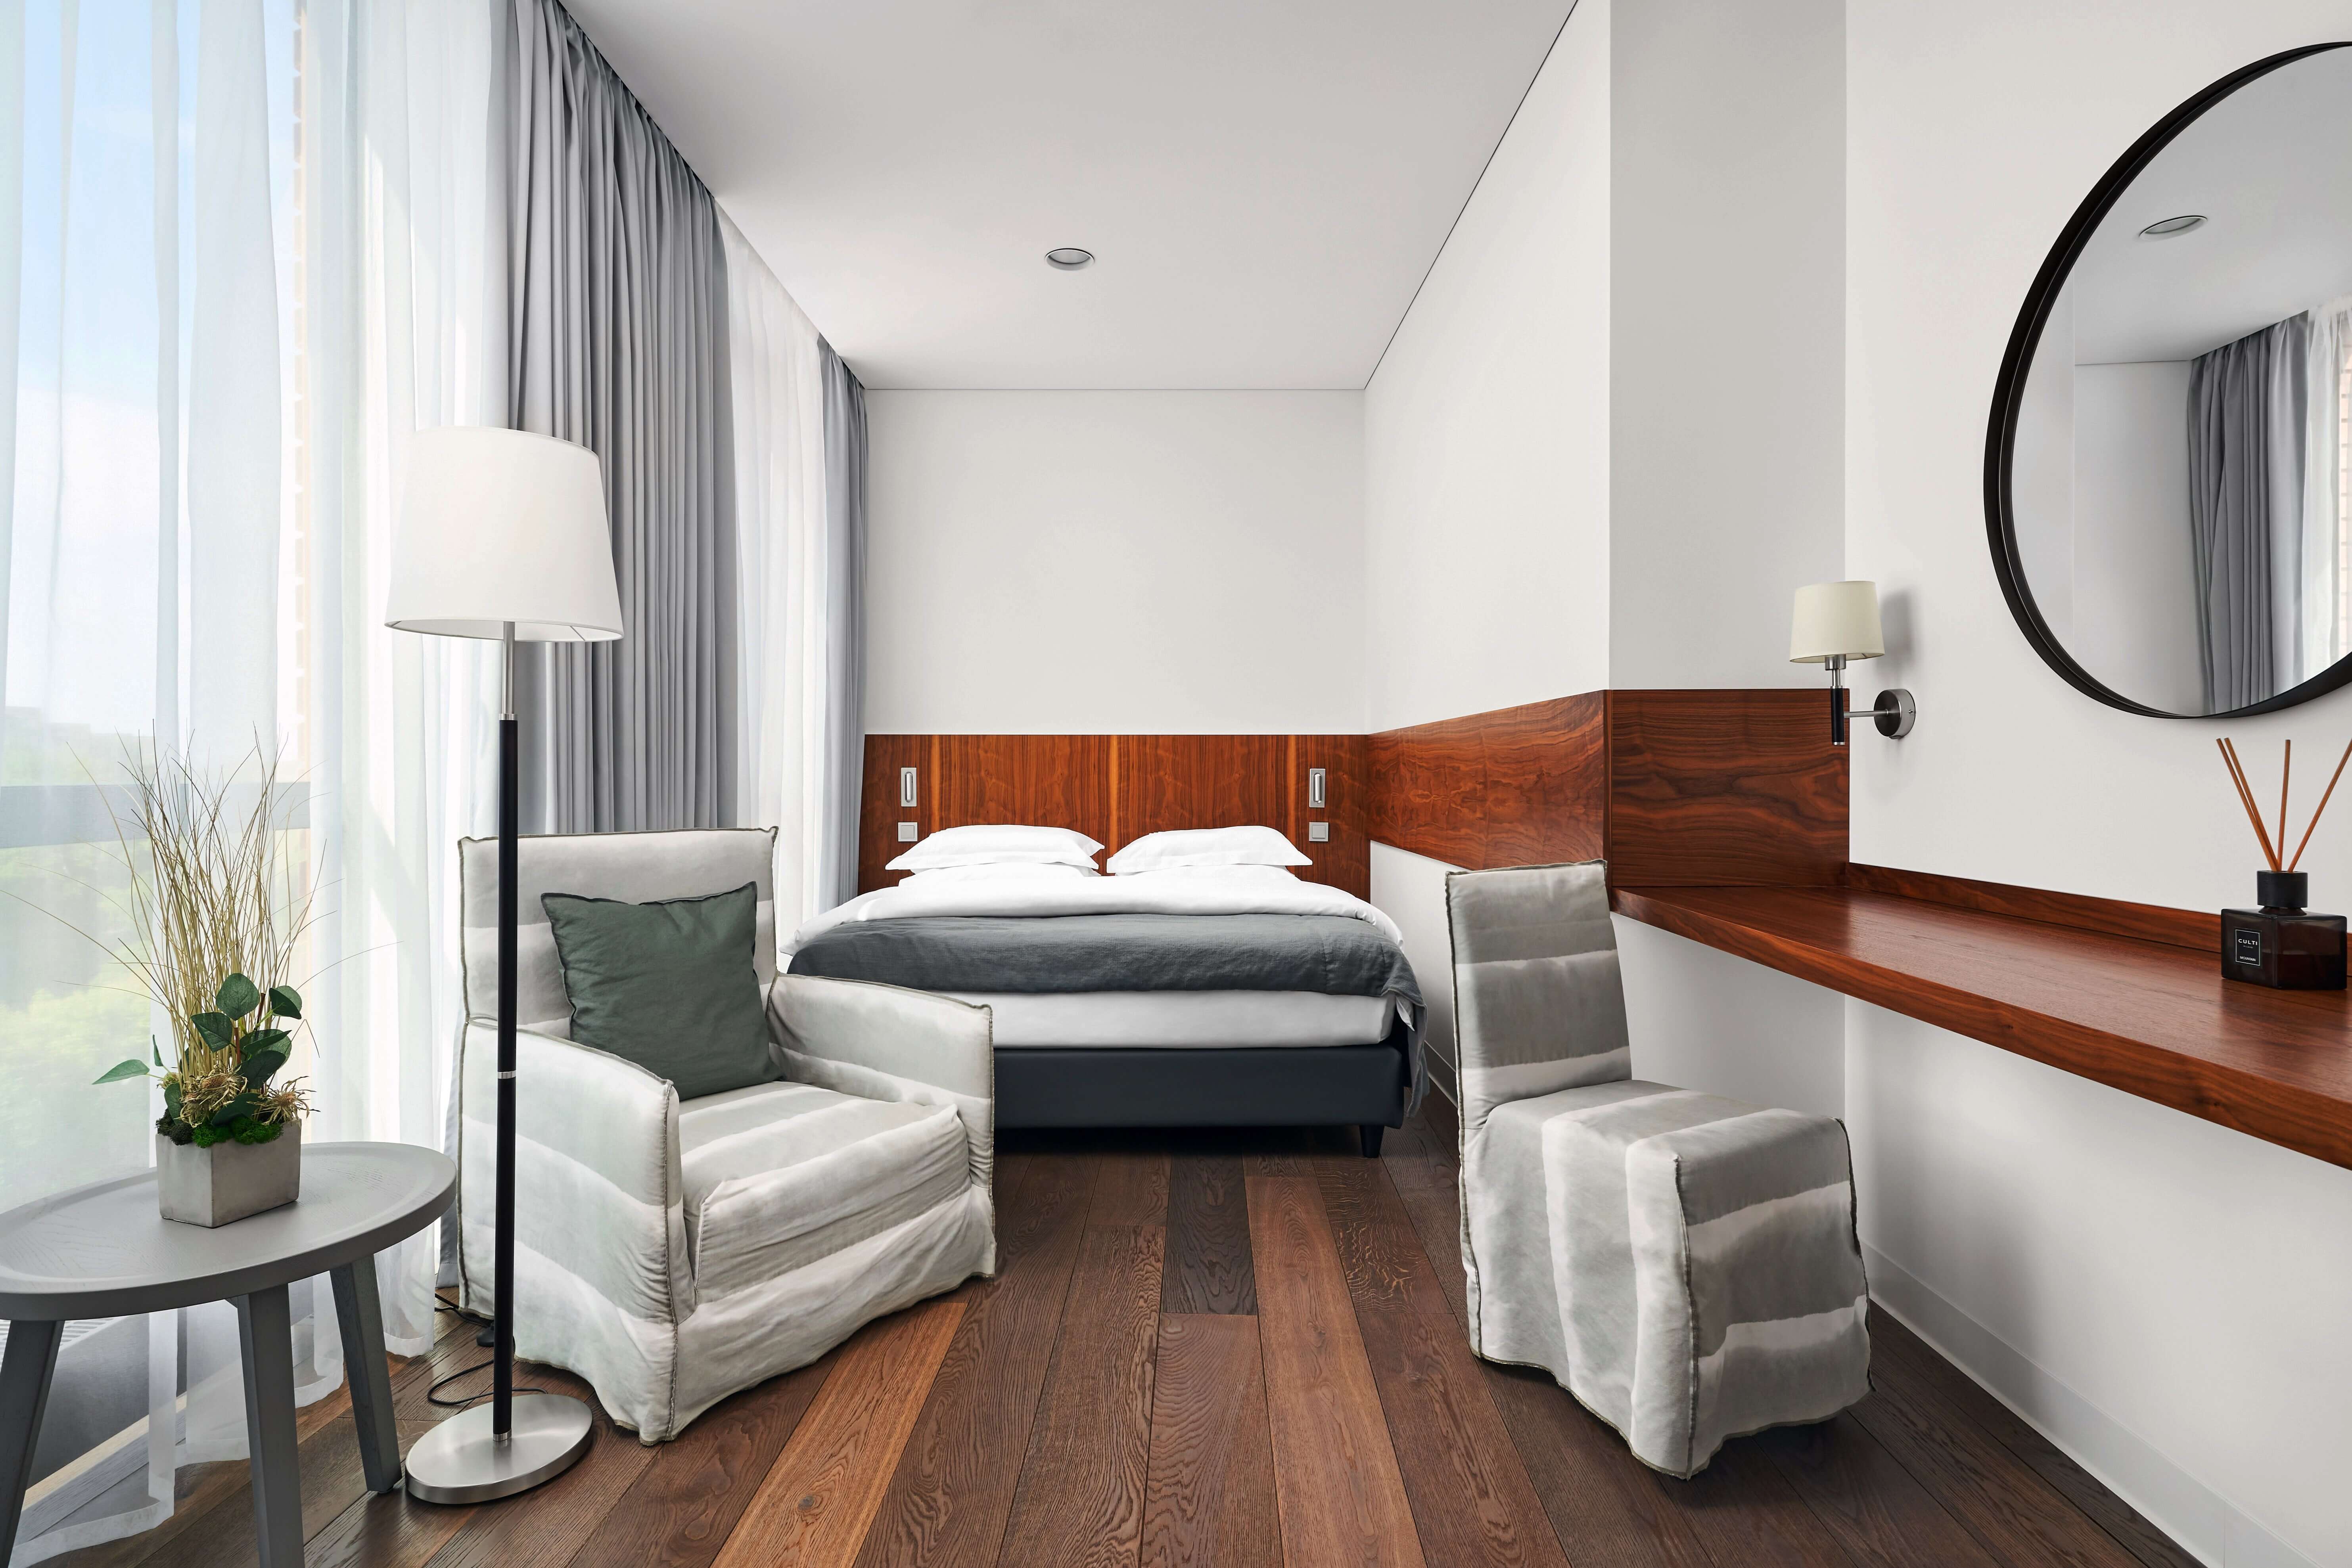 Crystal House Suite Hotel & Spa. Гостиничный номер: кровать с креслами, большое зеркало, светлые стены.